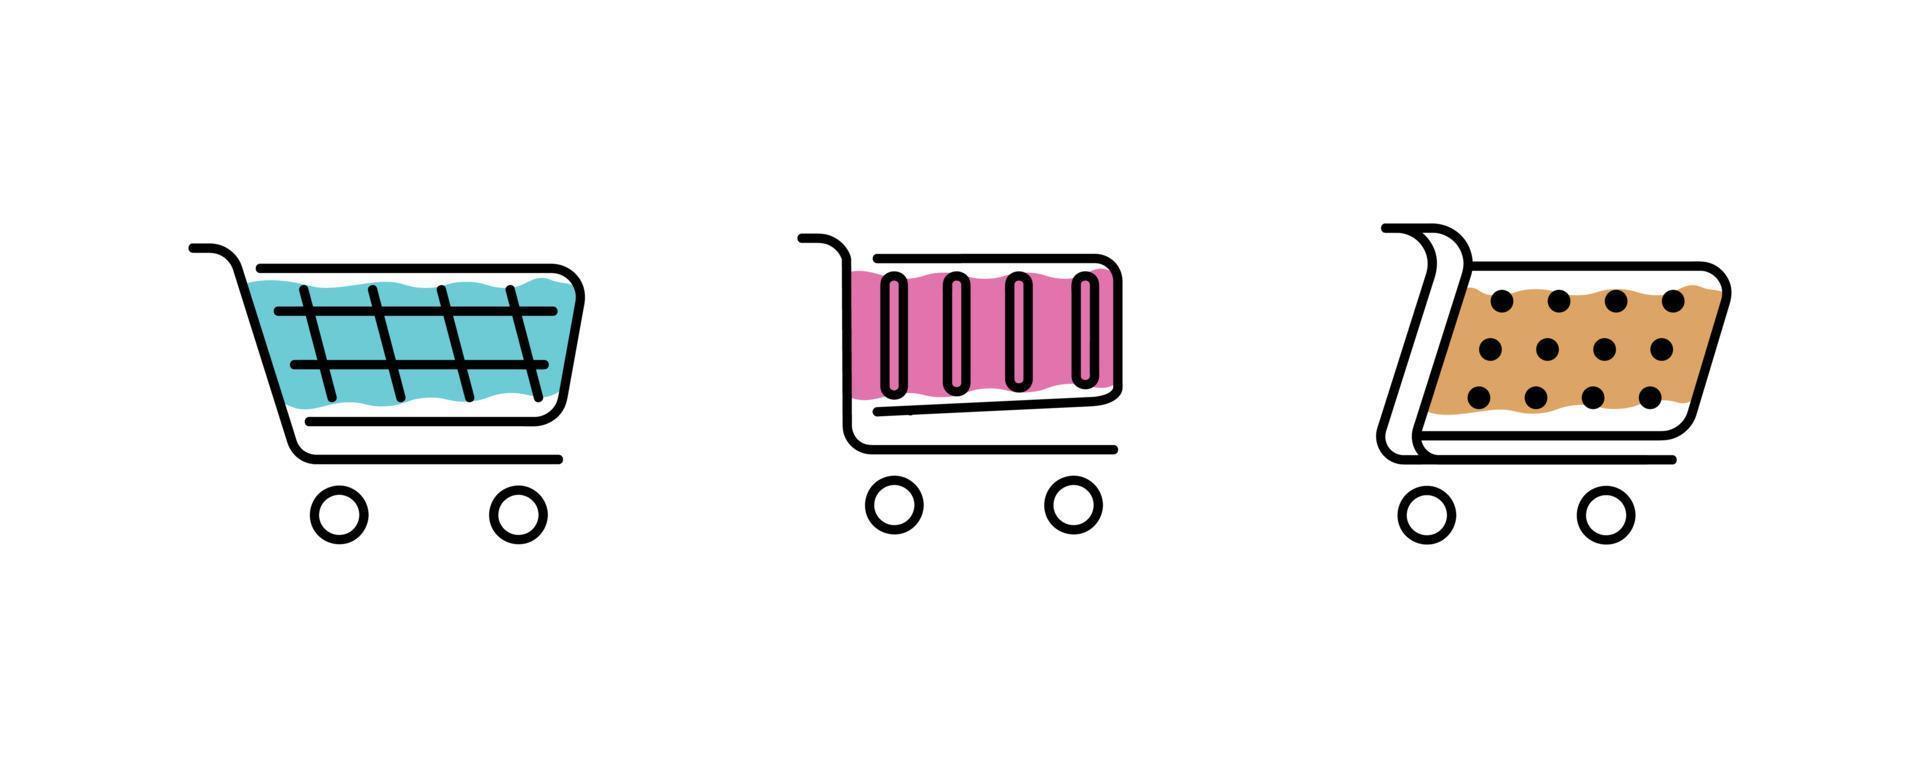 set van 3 verschillende en moderne kleurrijke winkelwagen pictogrammen. verzameling webpictogrammen van verschillende winkelwagenpictogrammen in verschillende vormen voor online winkel. moderne pictogrammen gevuld met kleur binnen. kunstlijn vector